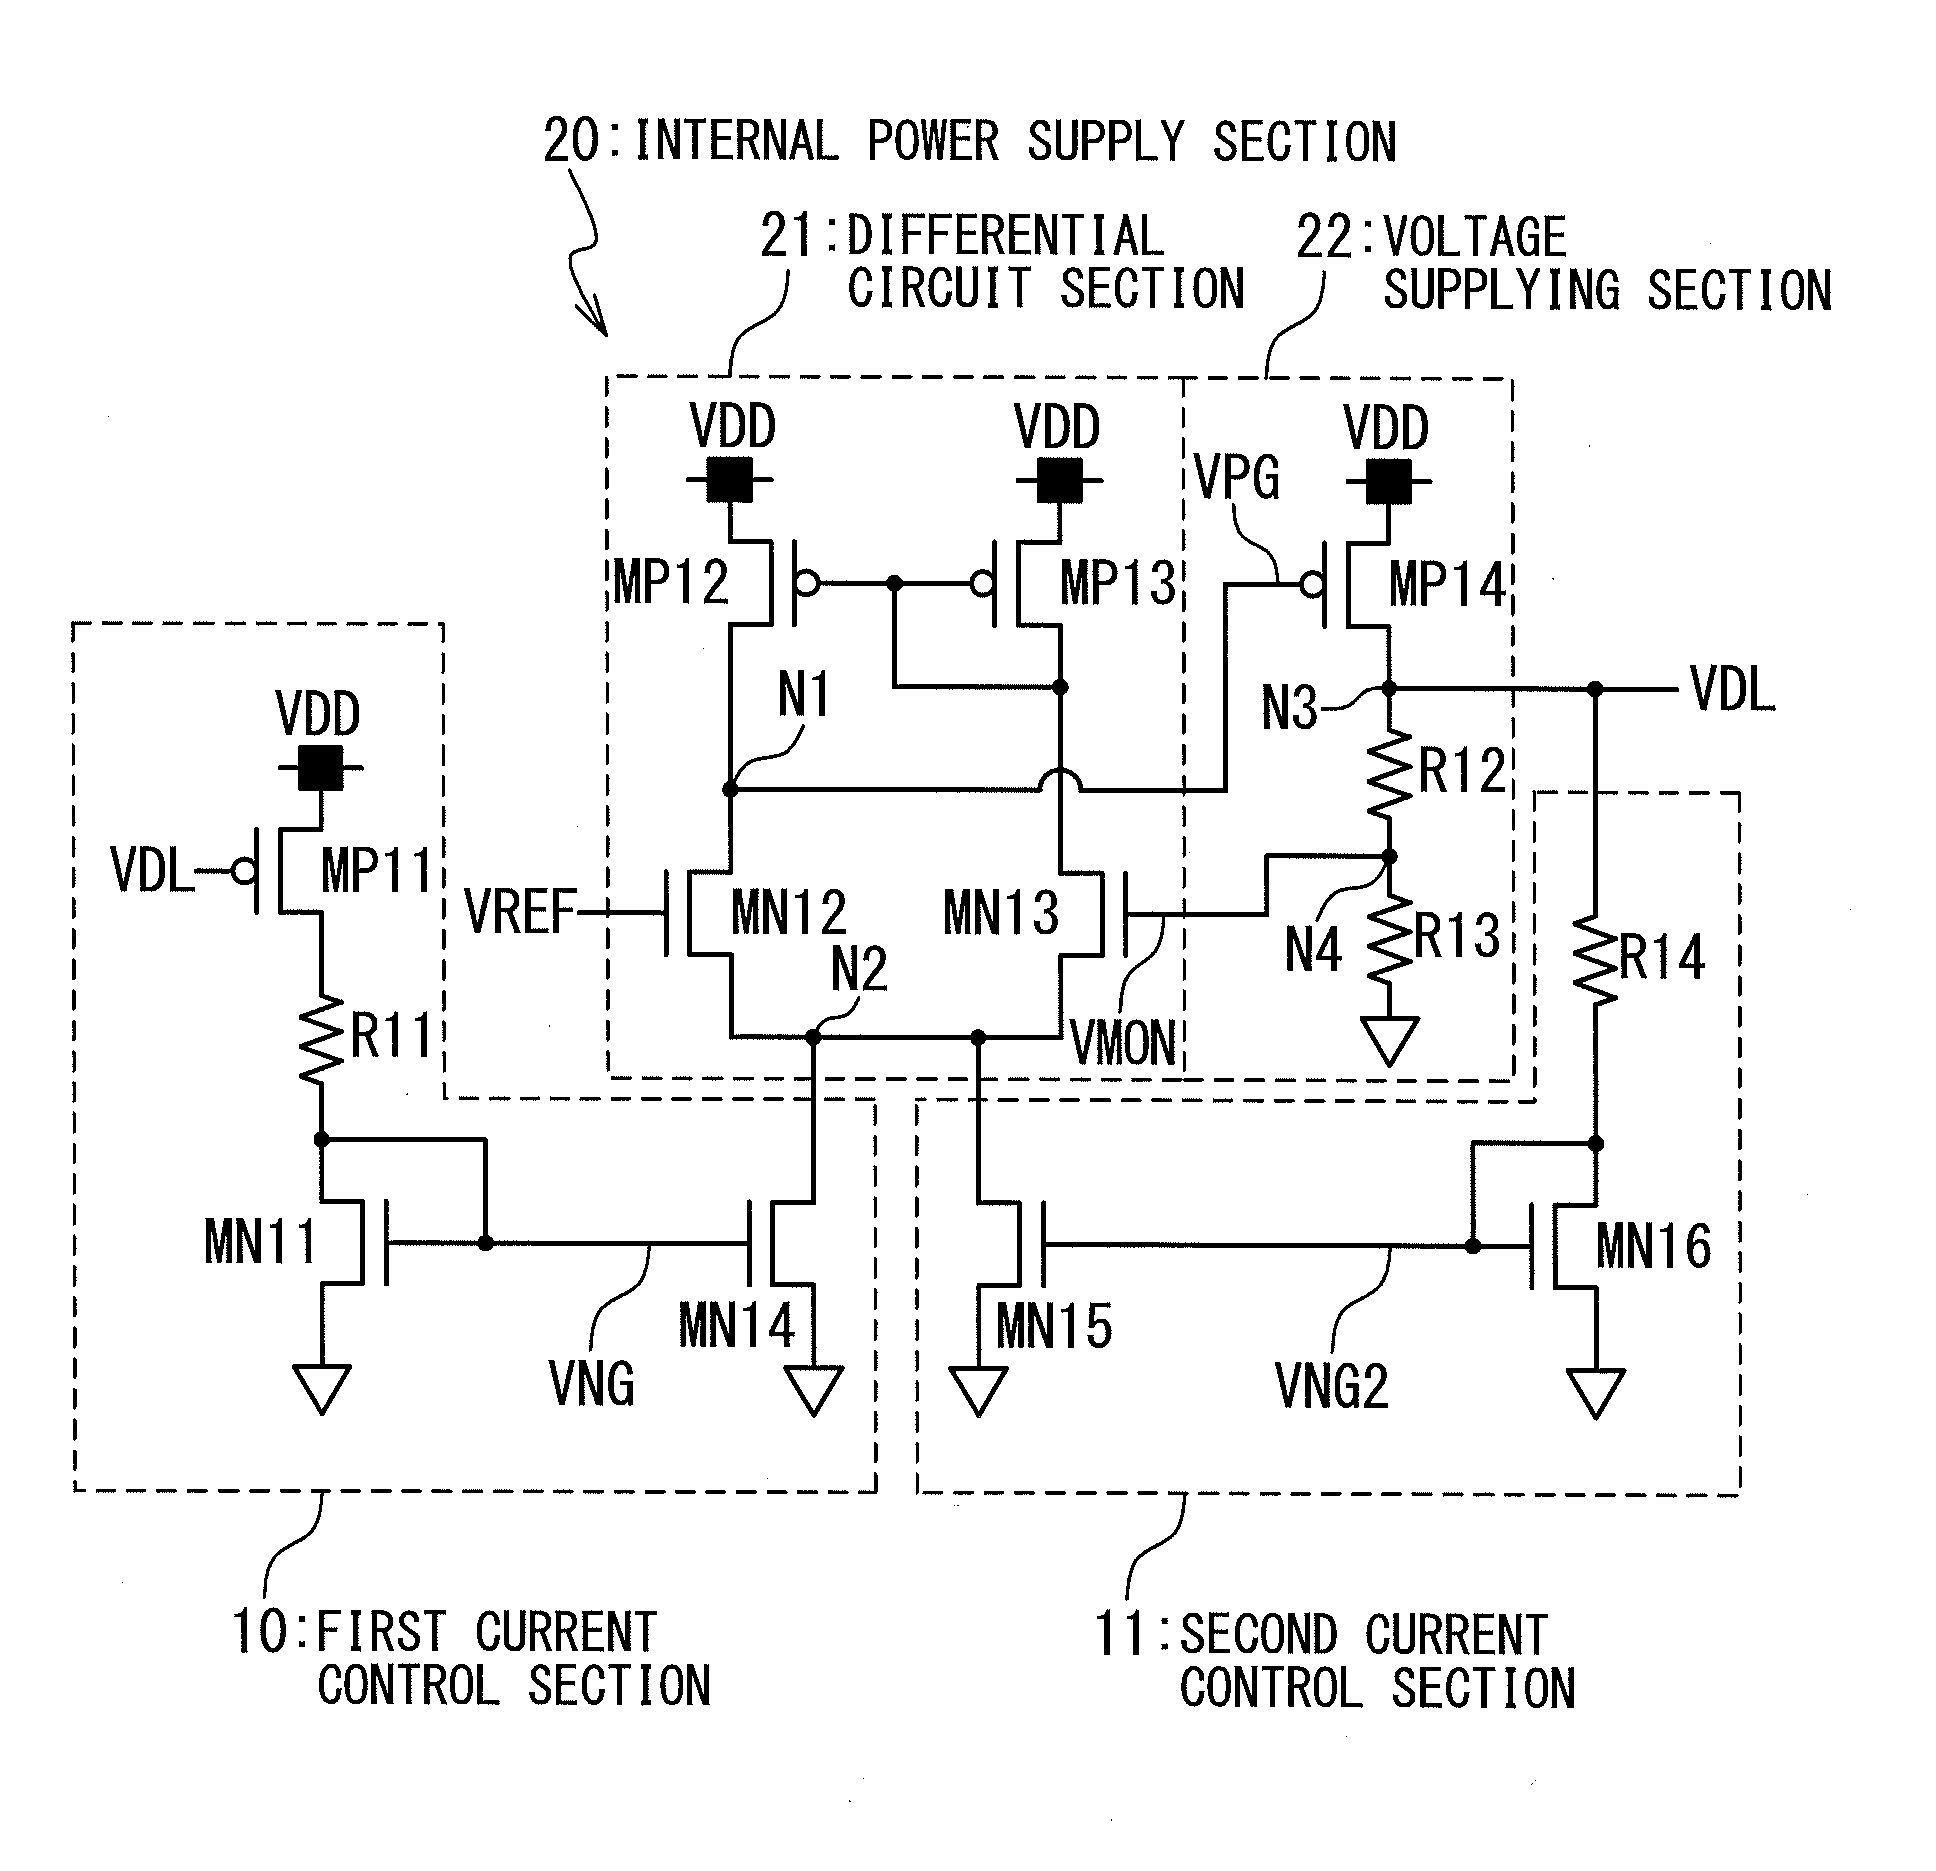 Voltage reducing circuit